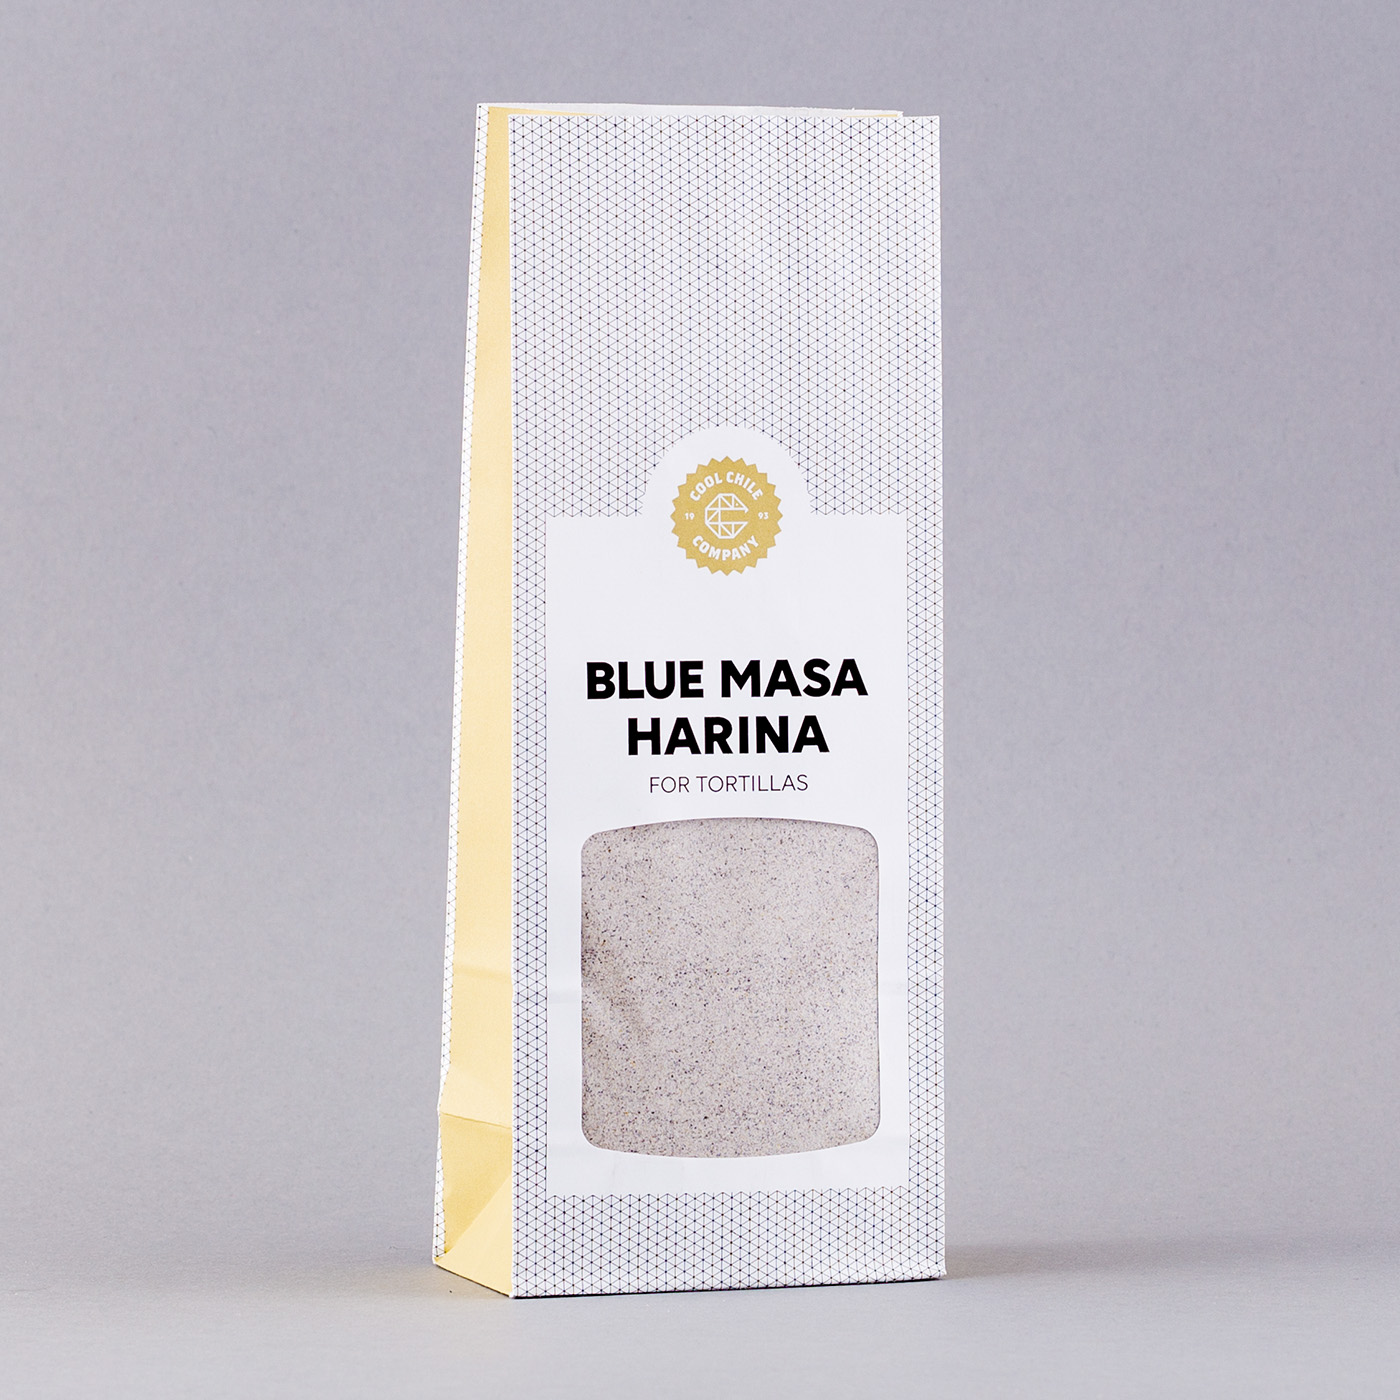 Blue masa - product image